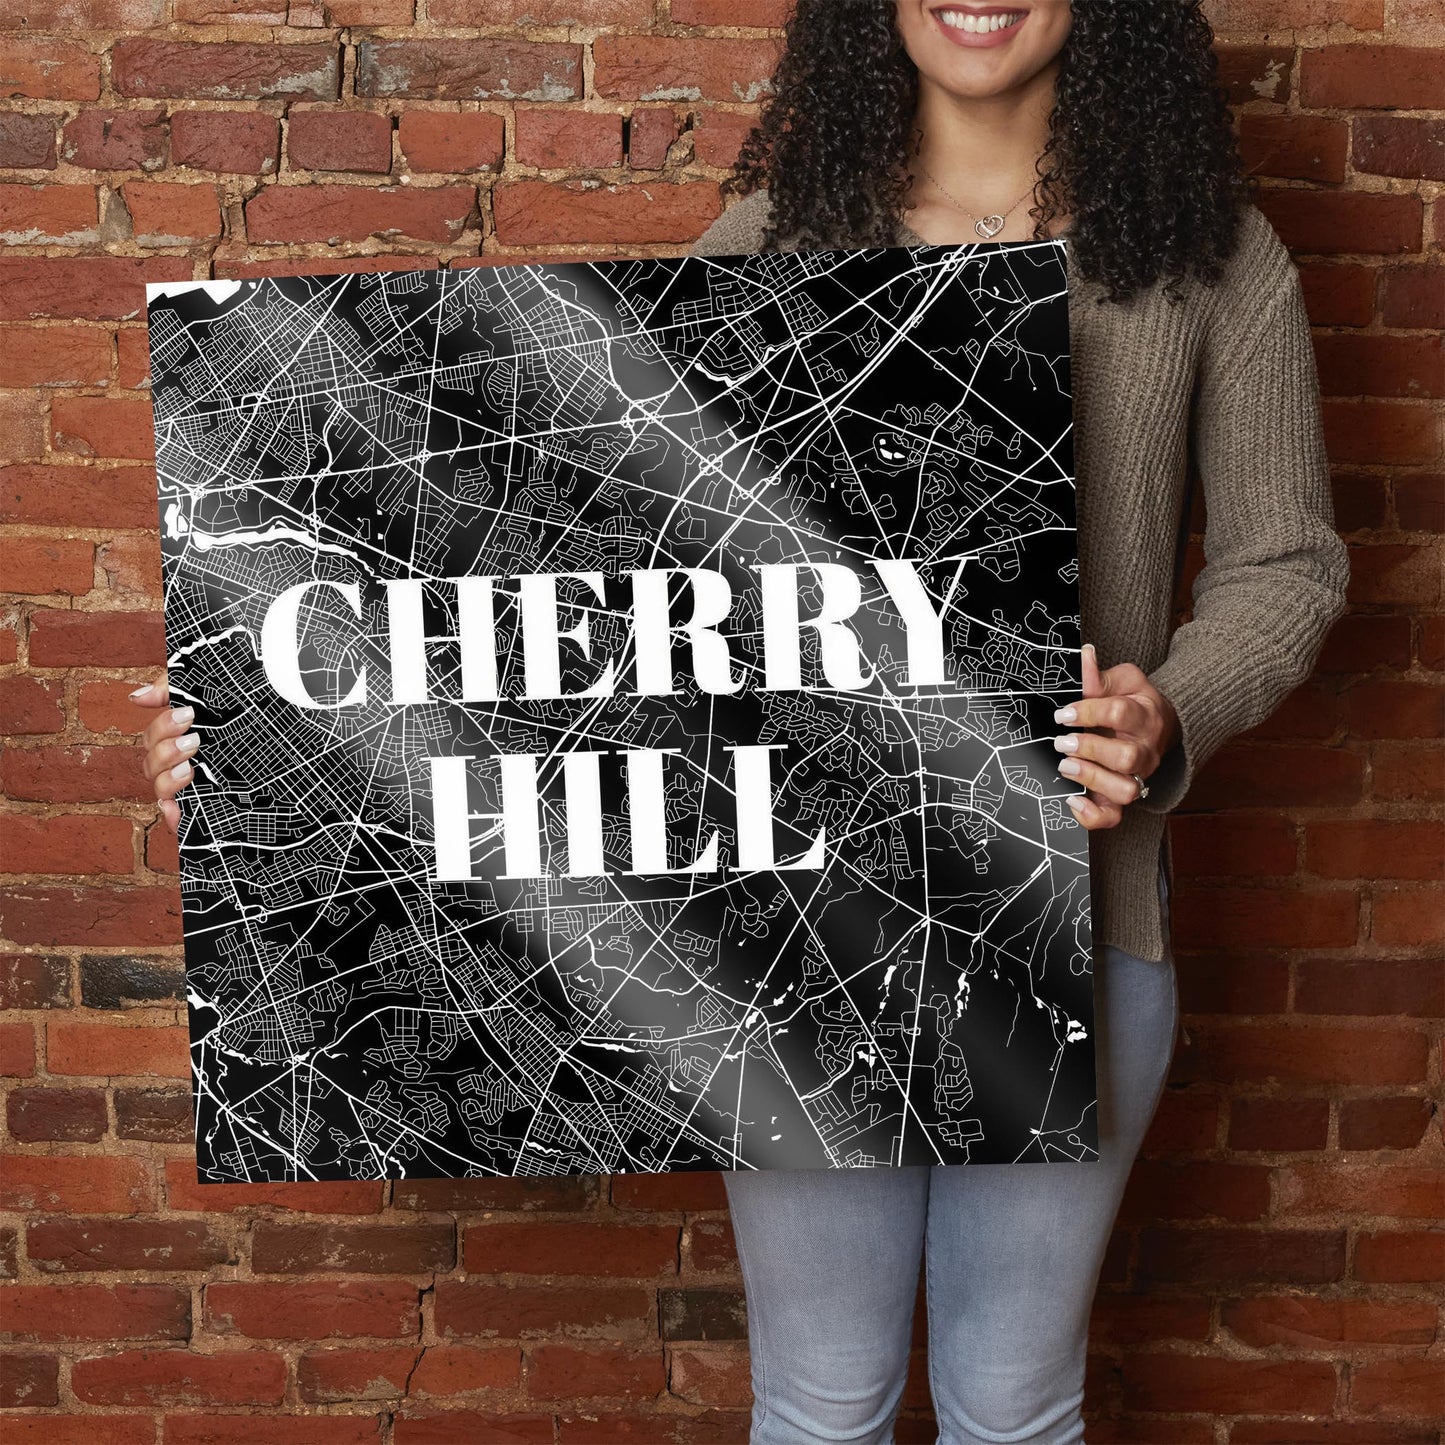 Minimalistic B&W New Jersey Cherry Hill Map | Hi-Def Glass Art | Eaches | Min 1